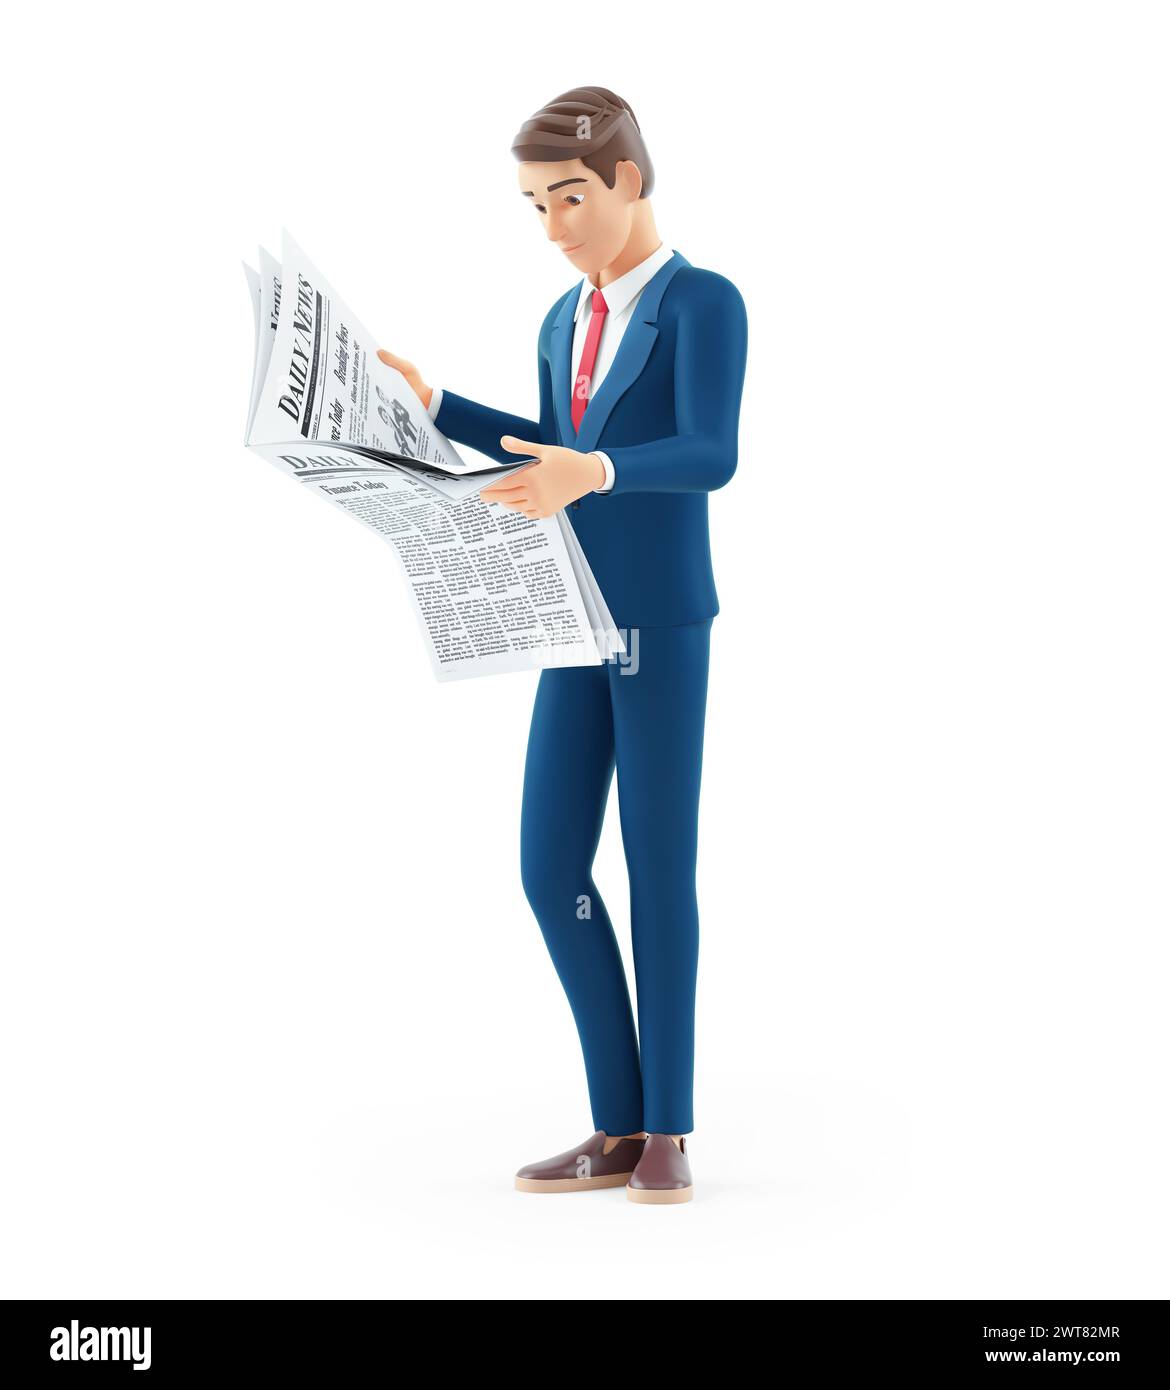 homme d'affaires de dessin animé 3d debout et lisant un journal, illustration isolée sur fond blanc Banque D'Images